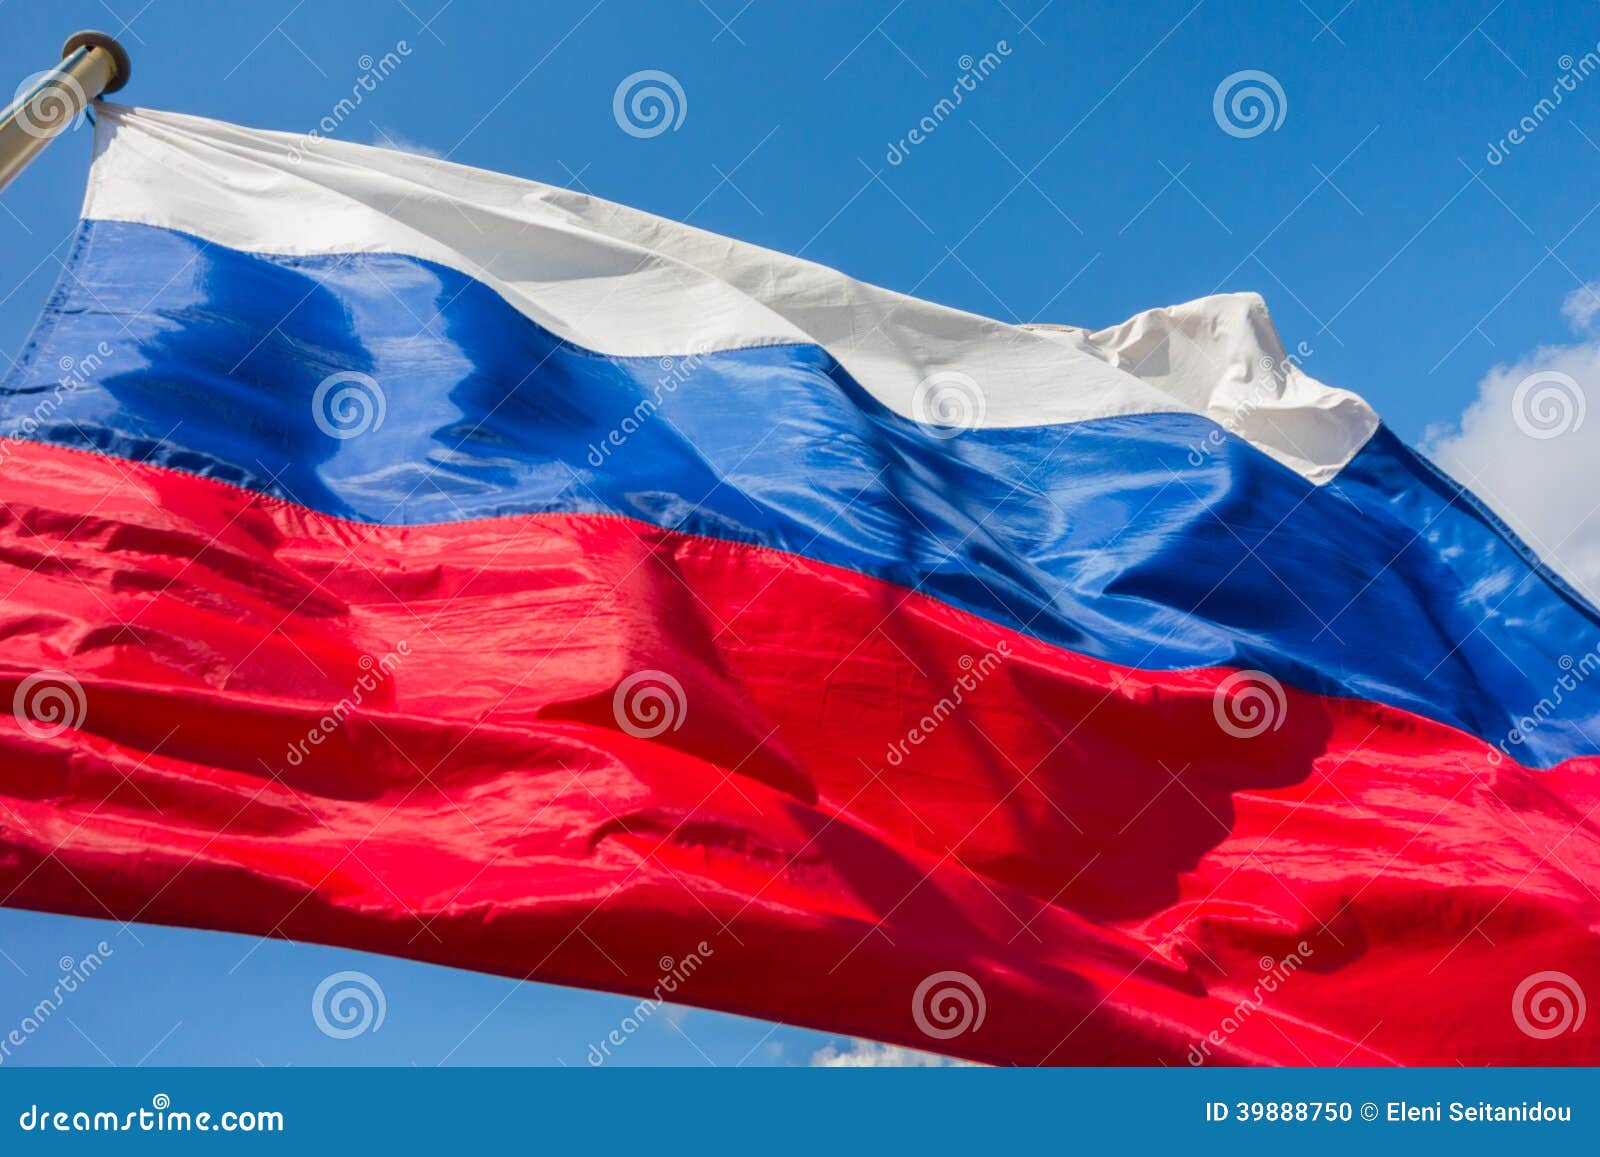 Drapeau russe photo stock. Image du drapeau, fond, fédération - 39888750